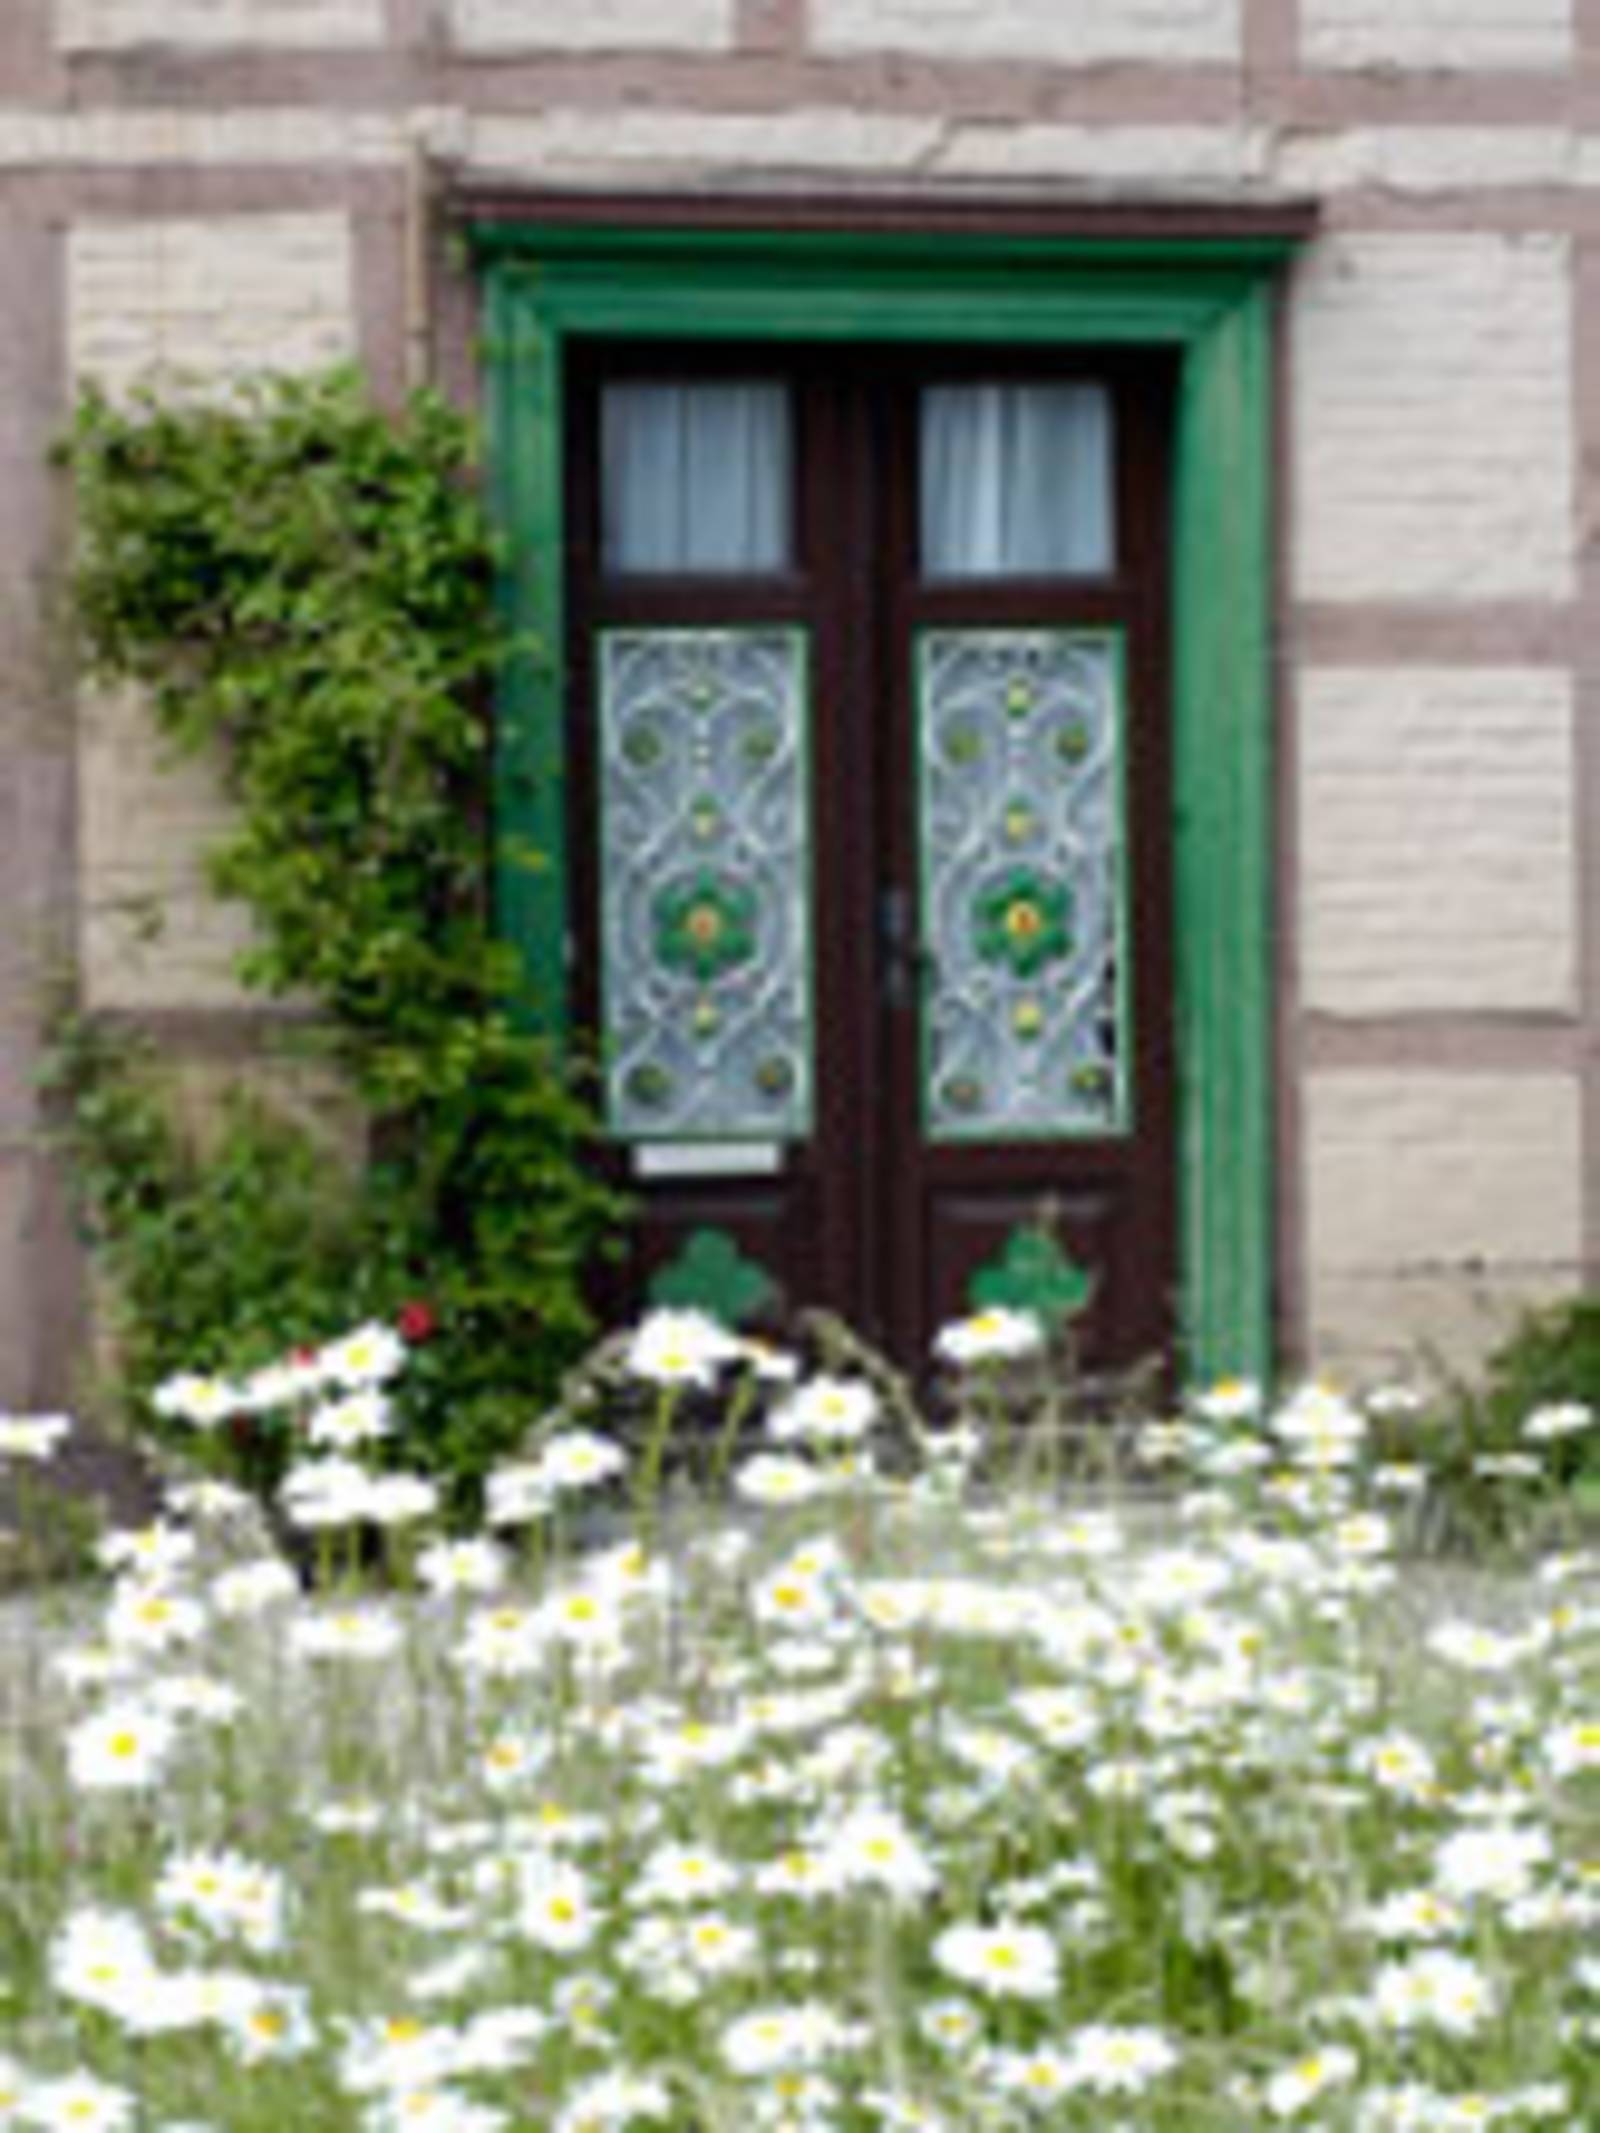 Im Vordergrund des Bildes blühen weiße Margeriten. Dahinter befindet sich eine Eingangstür eines Fachwerkhauses. Die braune Tür hat eine grünen Türrahmen. Links von der Tür befindet sich eine Rankpflanze an der Fassade.